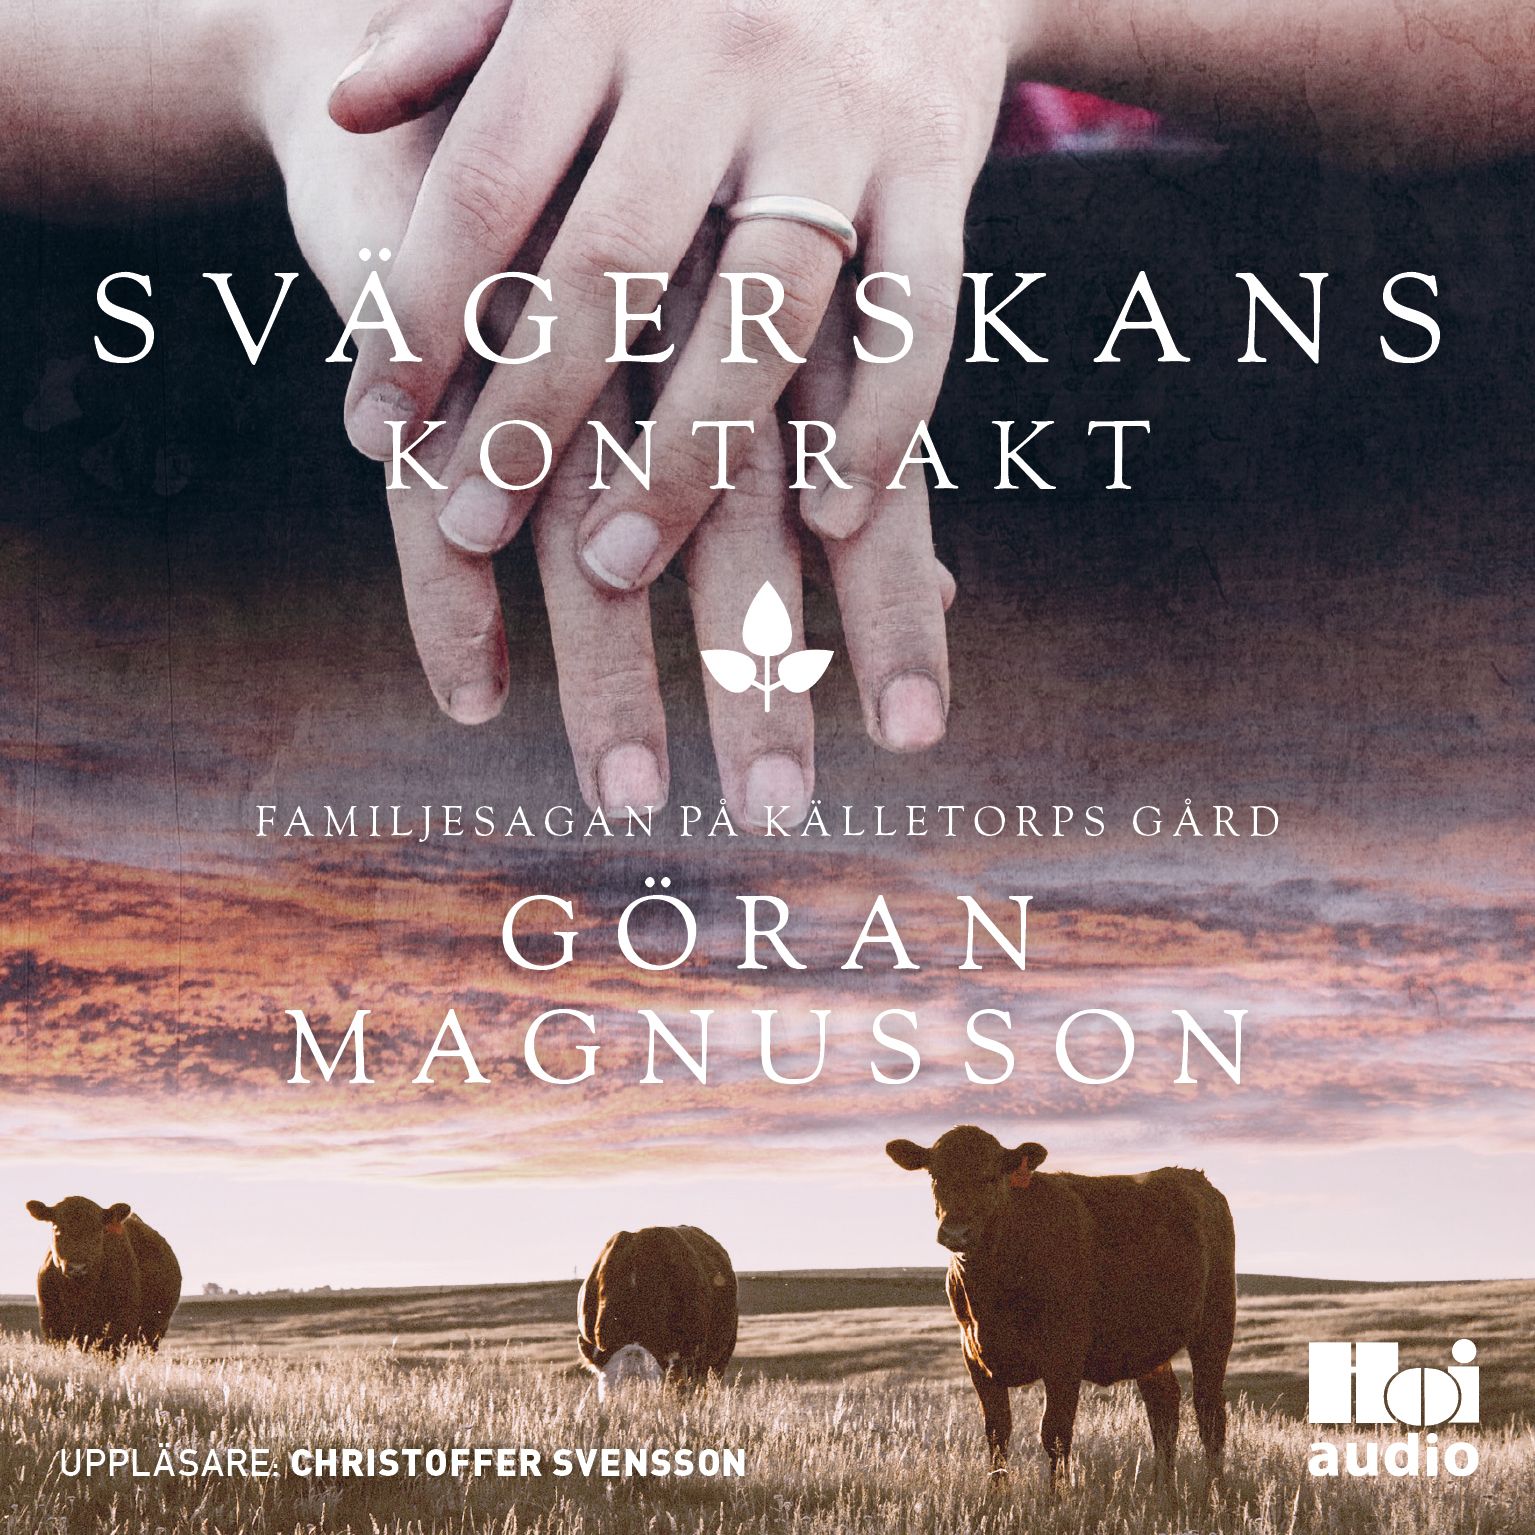 Svägerskans kontrakt, ljudbok av Göran Magnusson